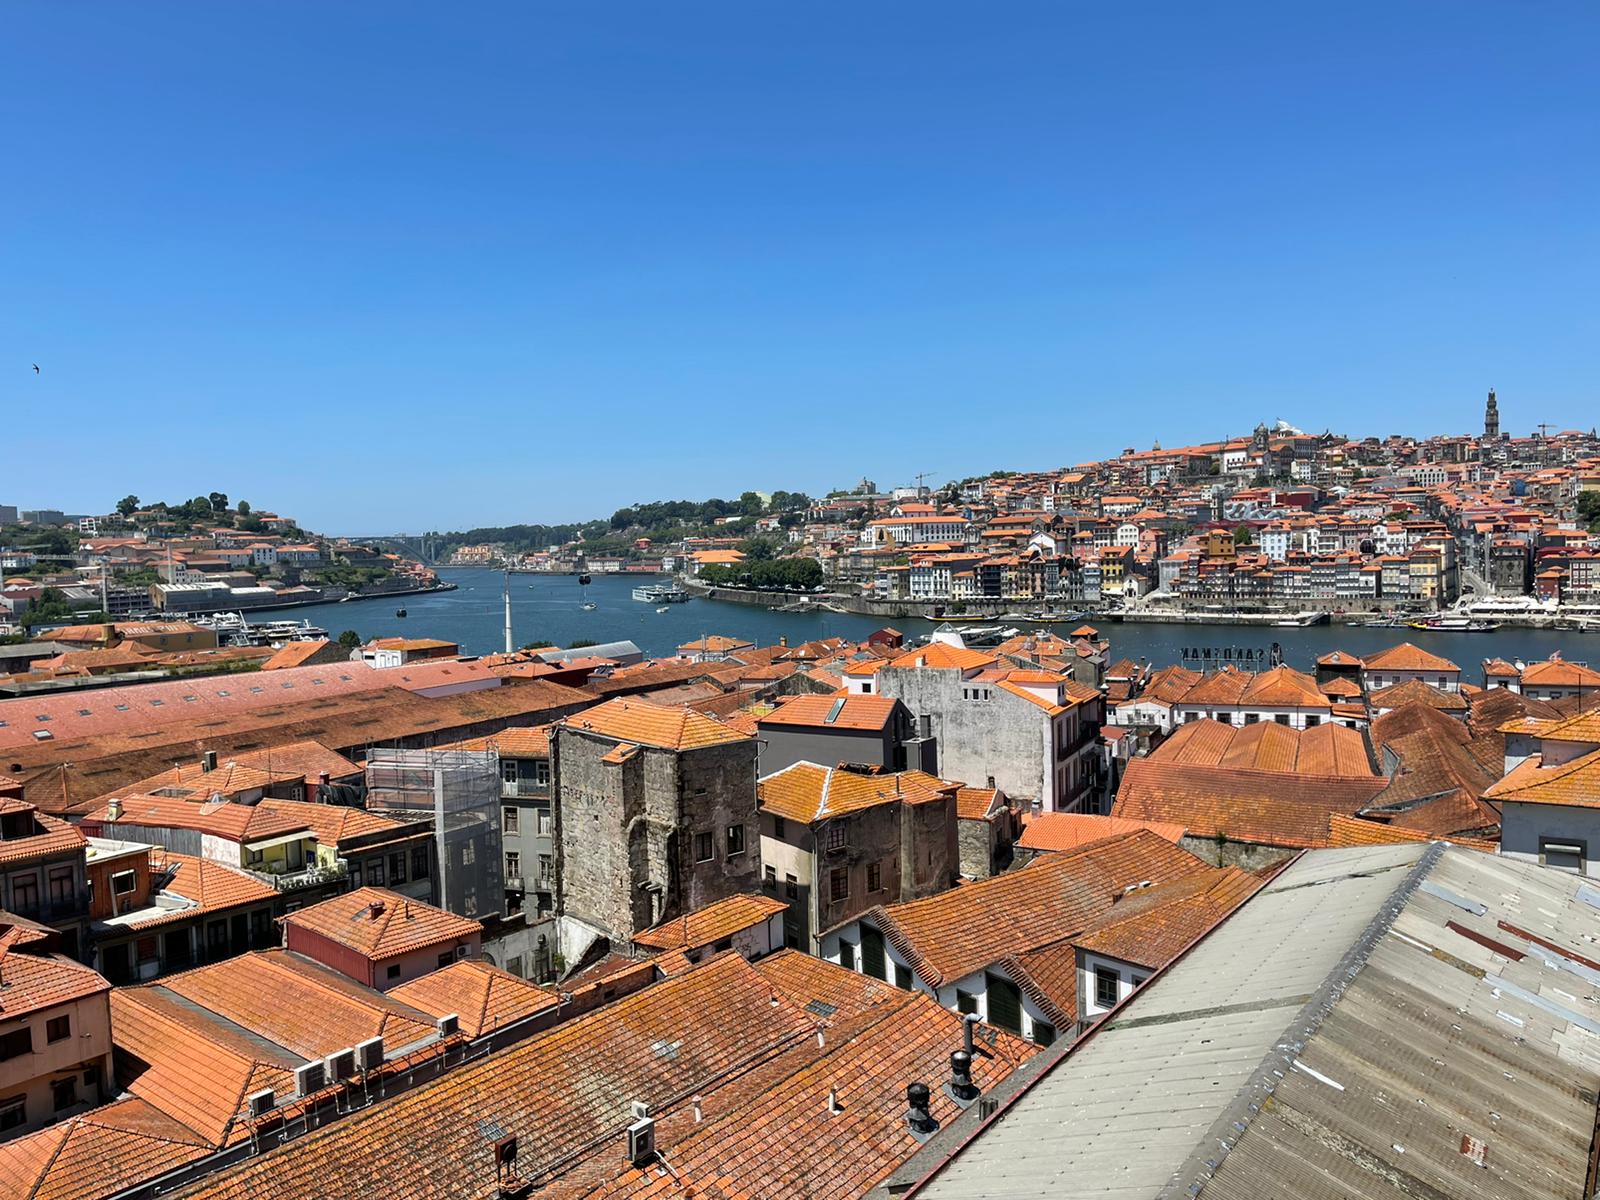 ביקוש השיא לדירות בפורטוגל נמשך: עלייה של 20% במחירי הדירות בפורטו בשנה האחרונה!